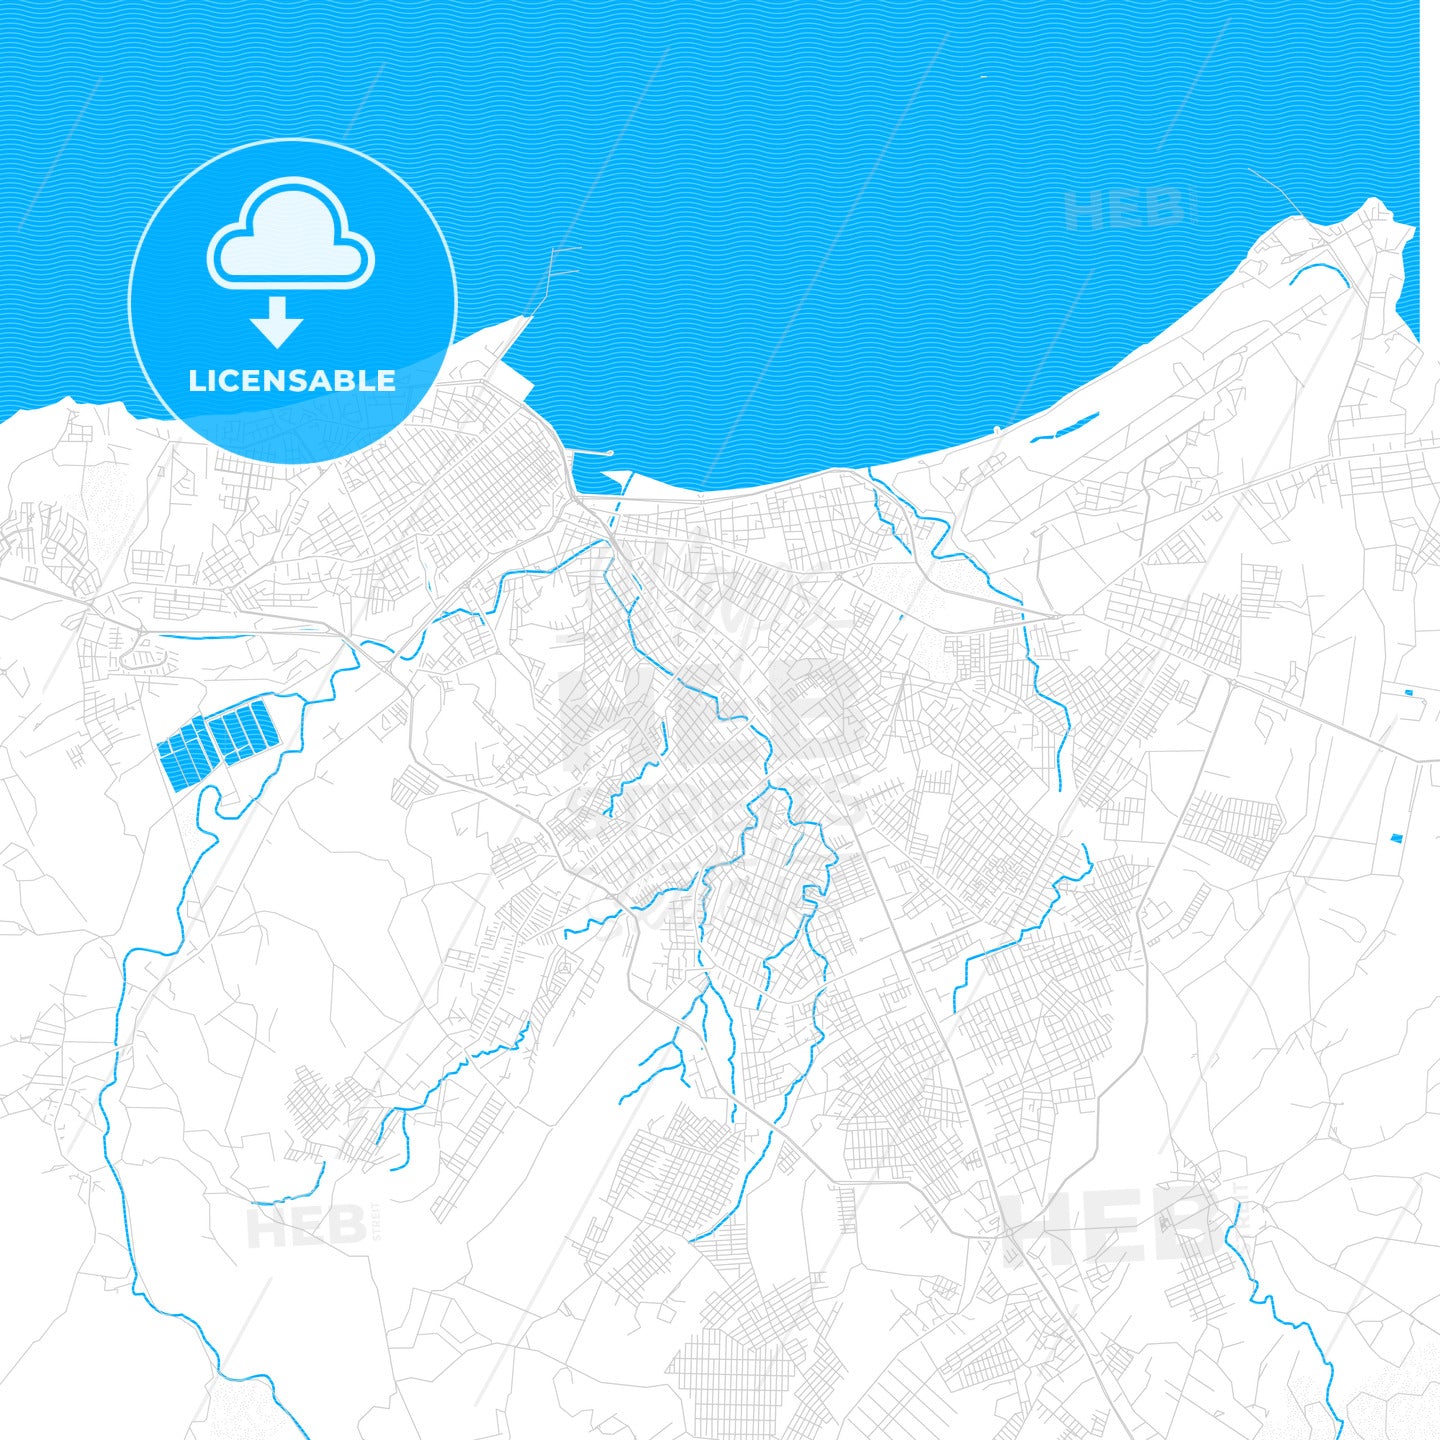 Manta, Ecuador PDF vector map with water in focus